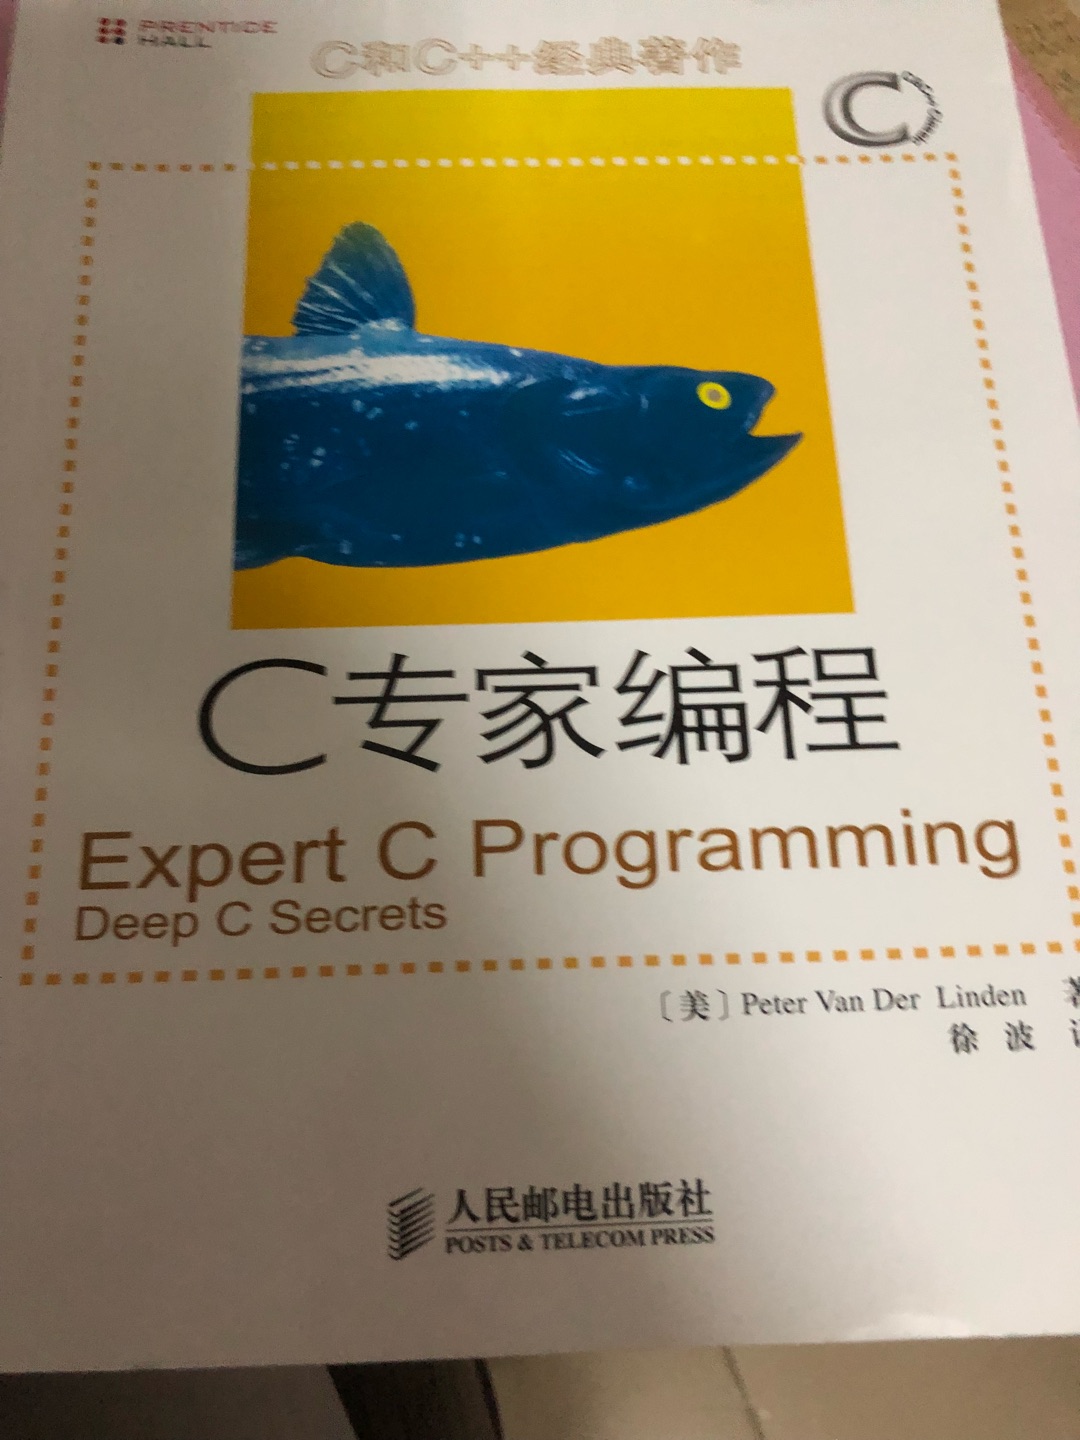 非常好的书，很专业，拿来学c语言的。同事推荐的。